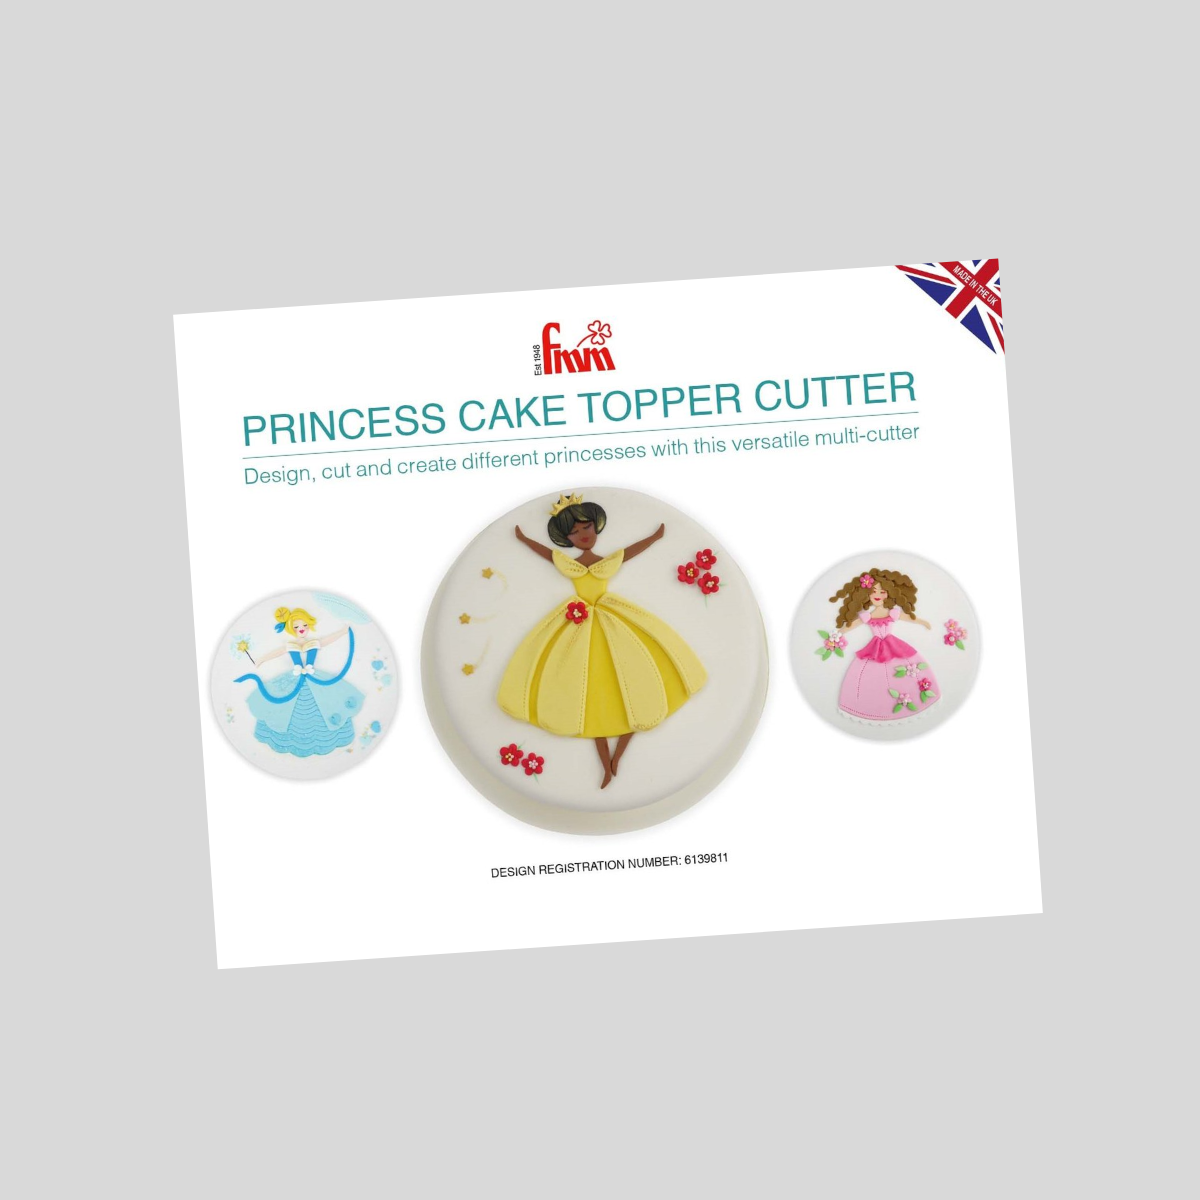 The Princess Cake Topper Cutter